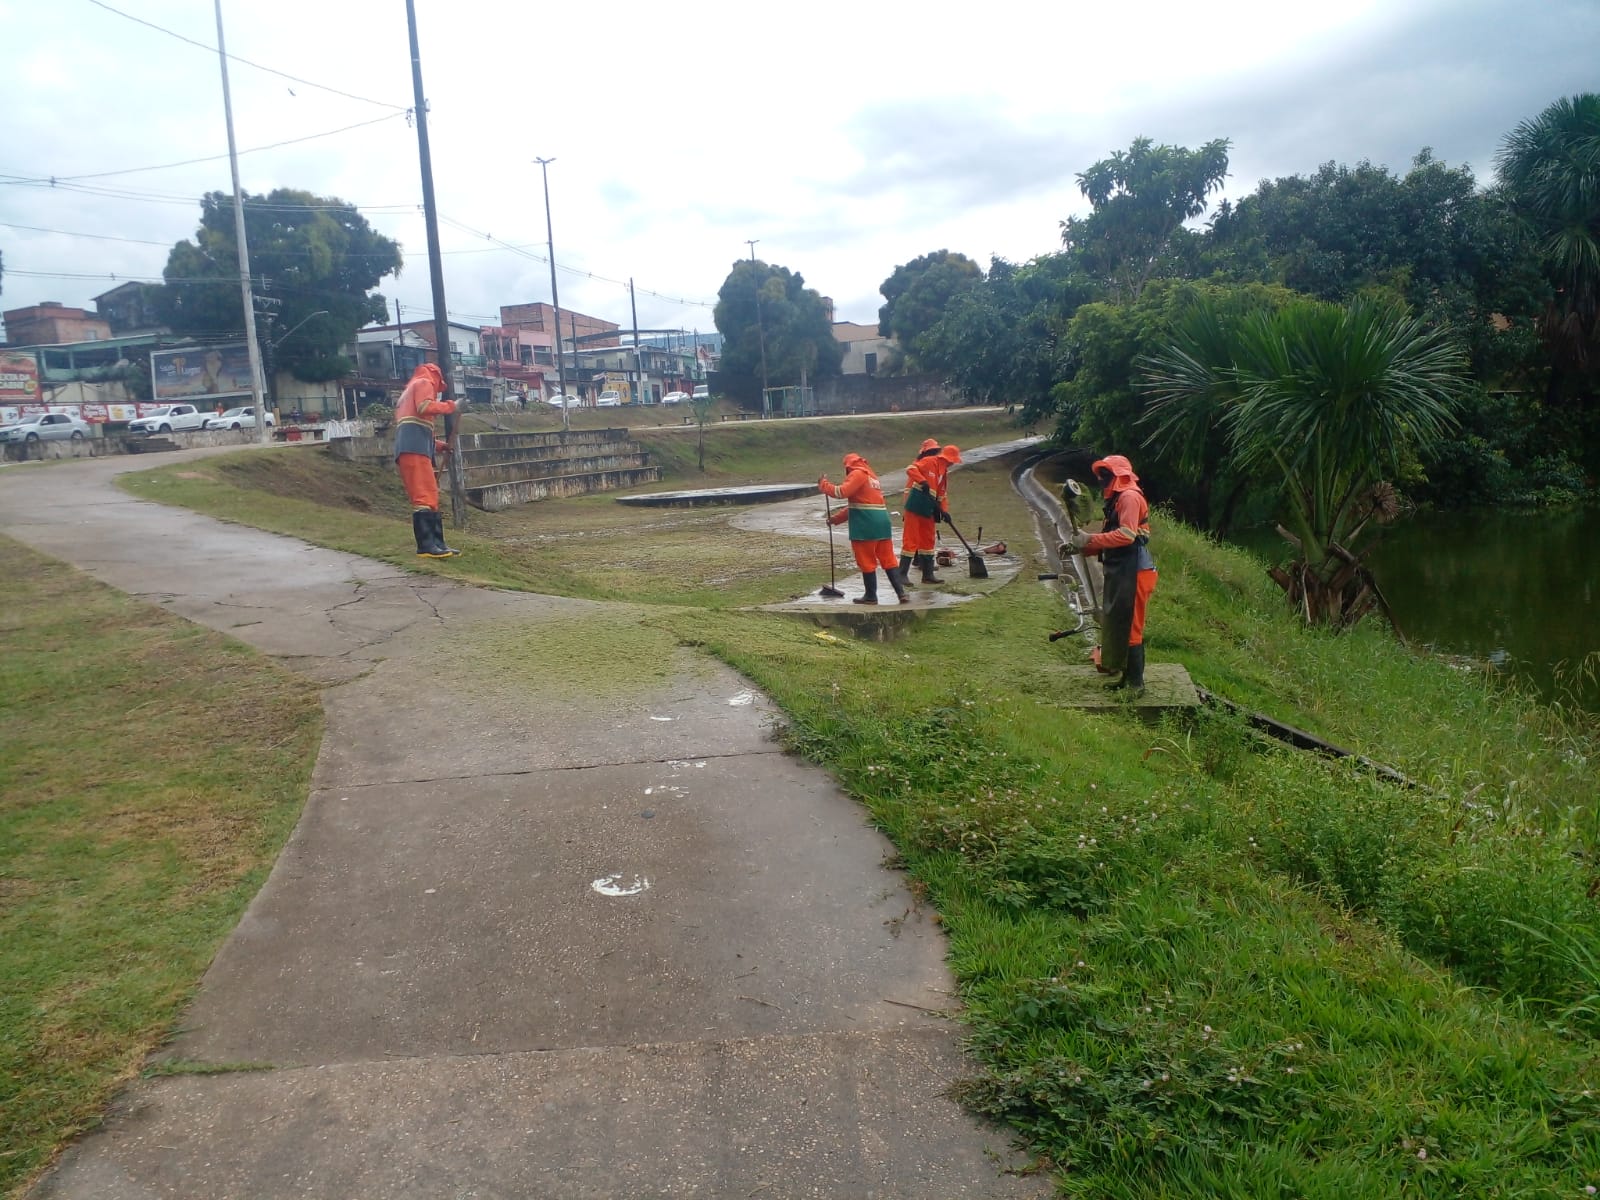 Praca da Gloria recebe servicos de limpeza da Prefeitura de Manaus 2